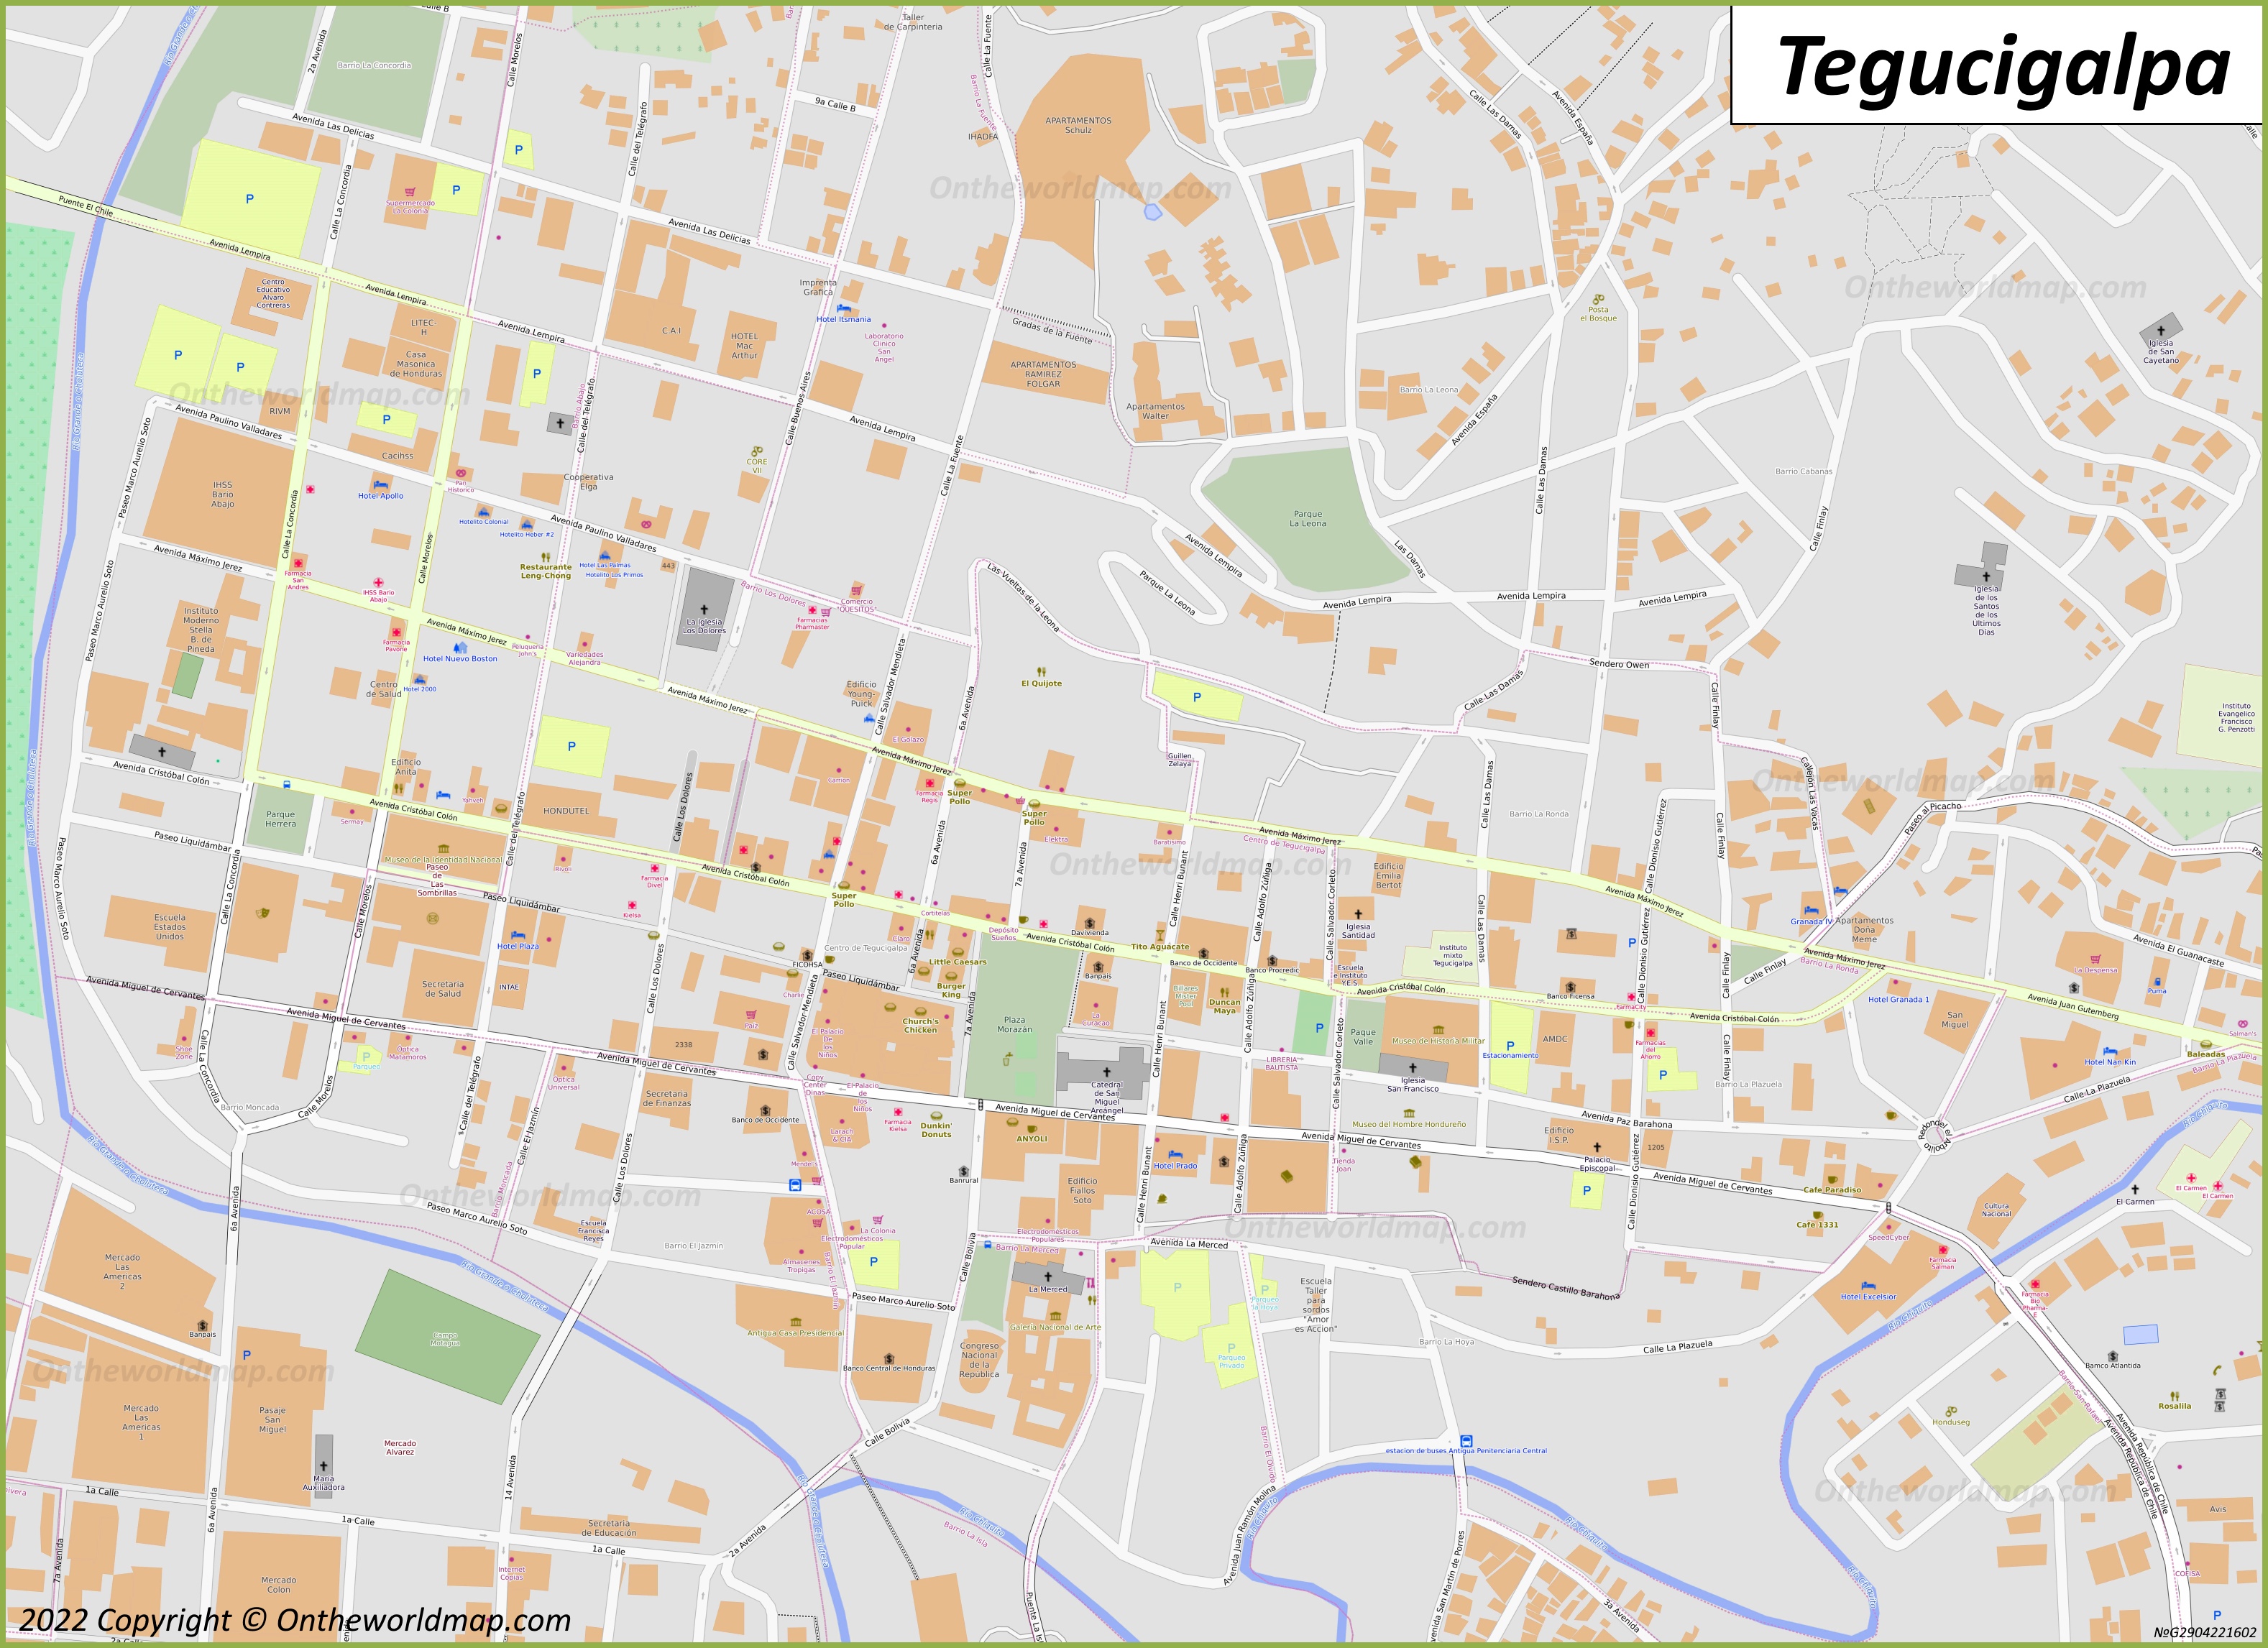 Tegucigalpa City Centre Map